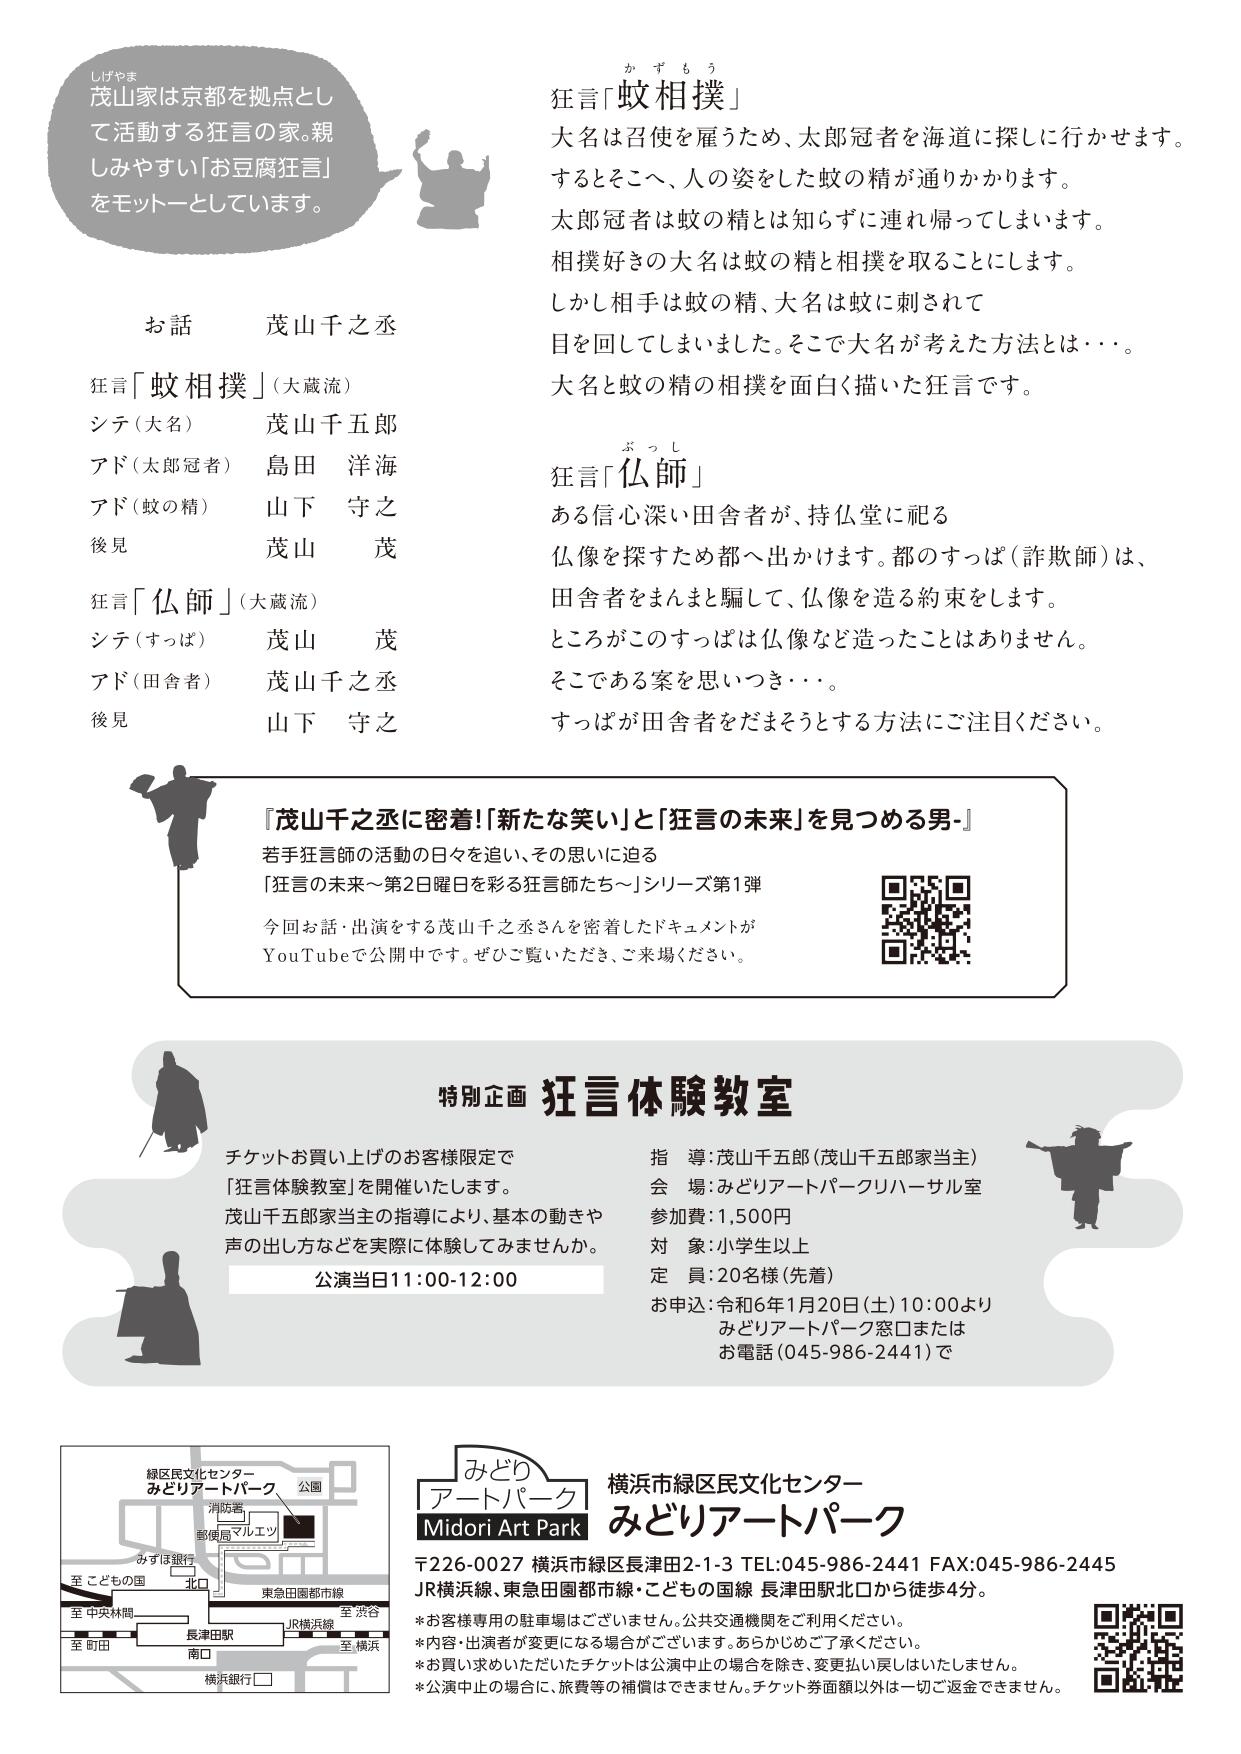 kyogendo_midoripark (1)_page-0002.jpg